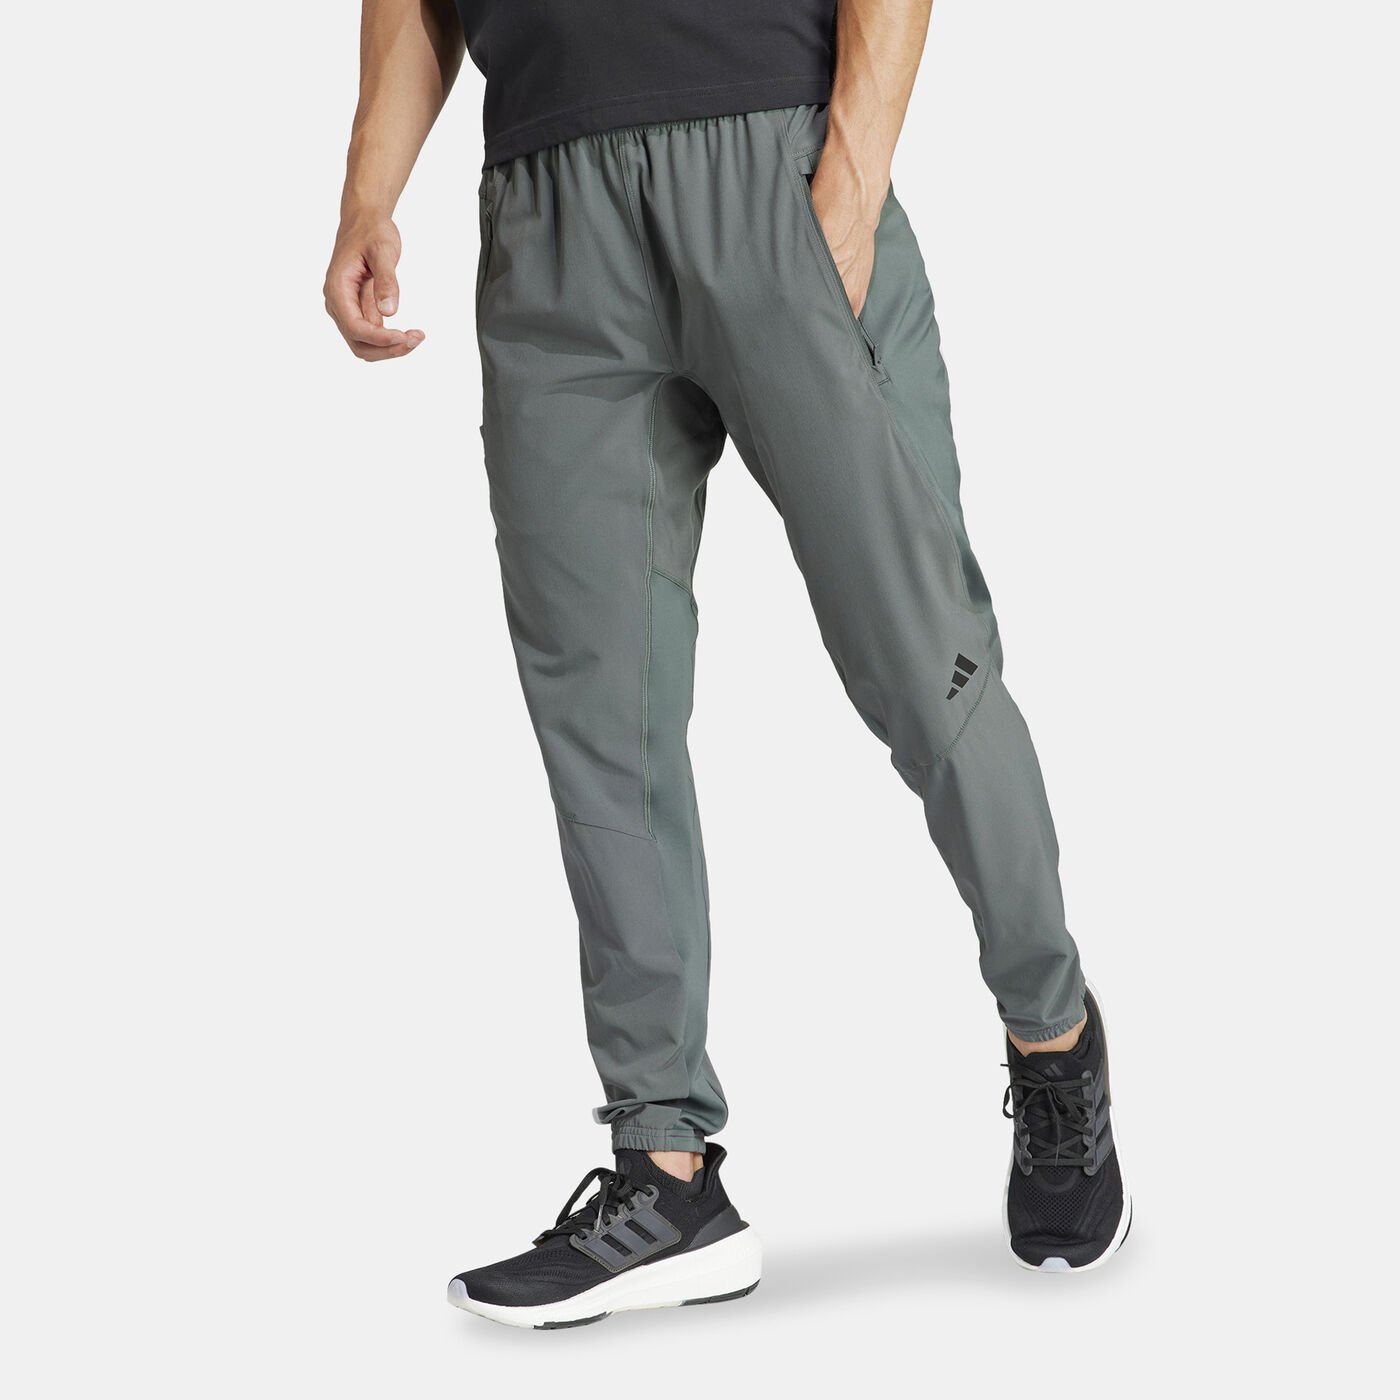 Men's Designed For Training Pants